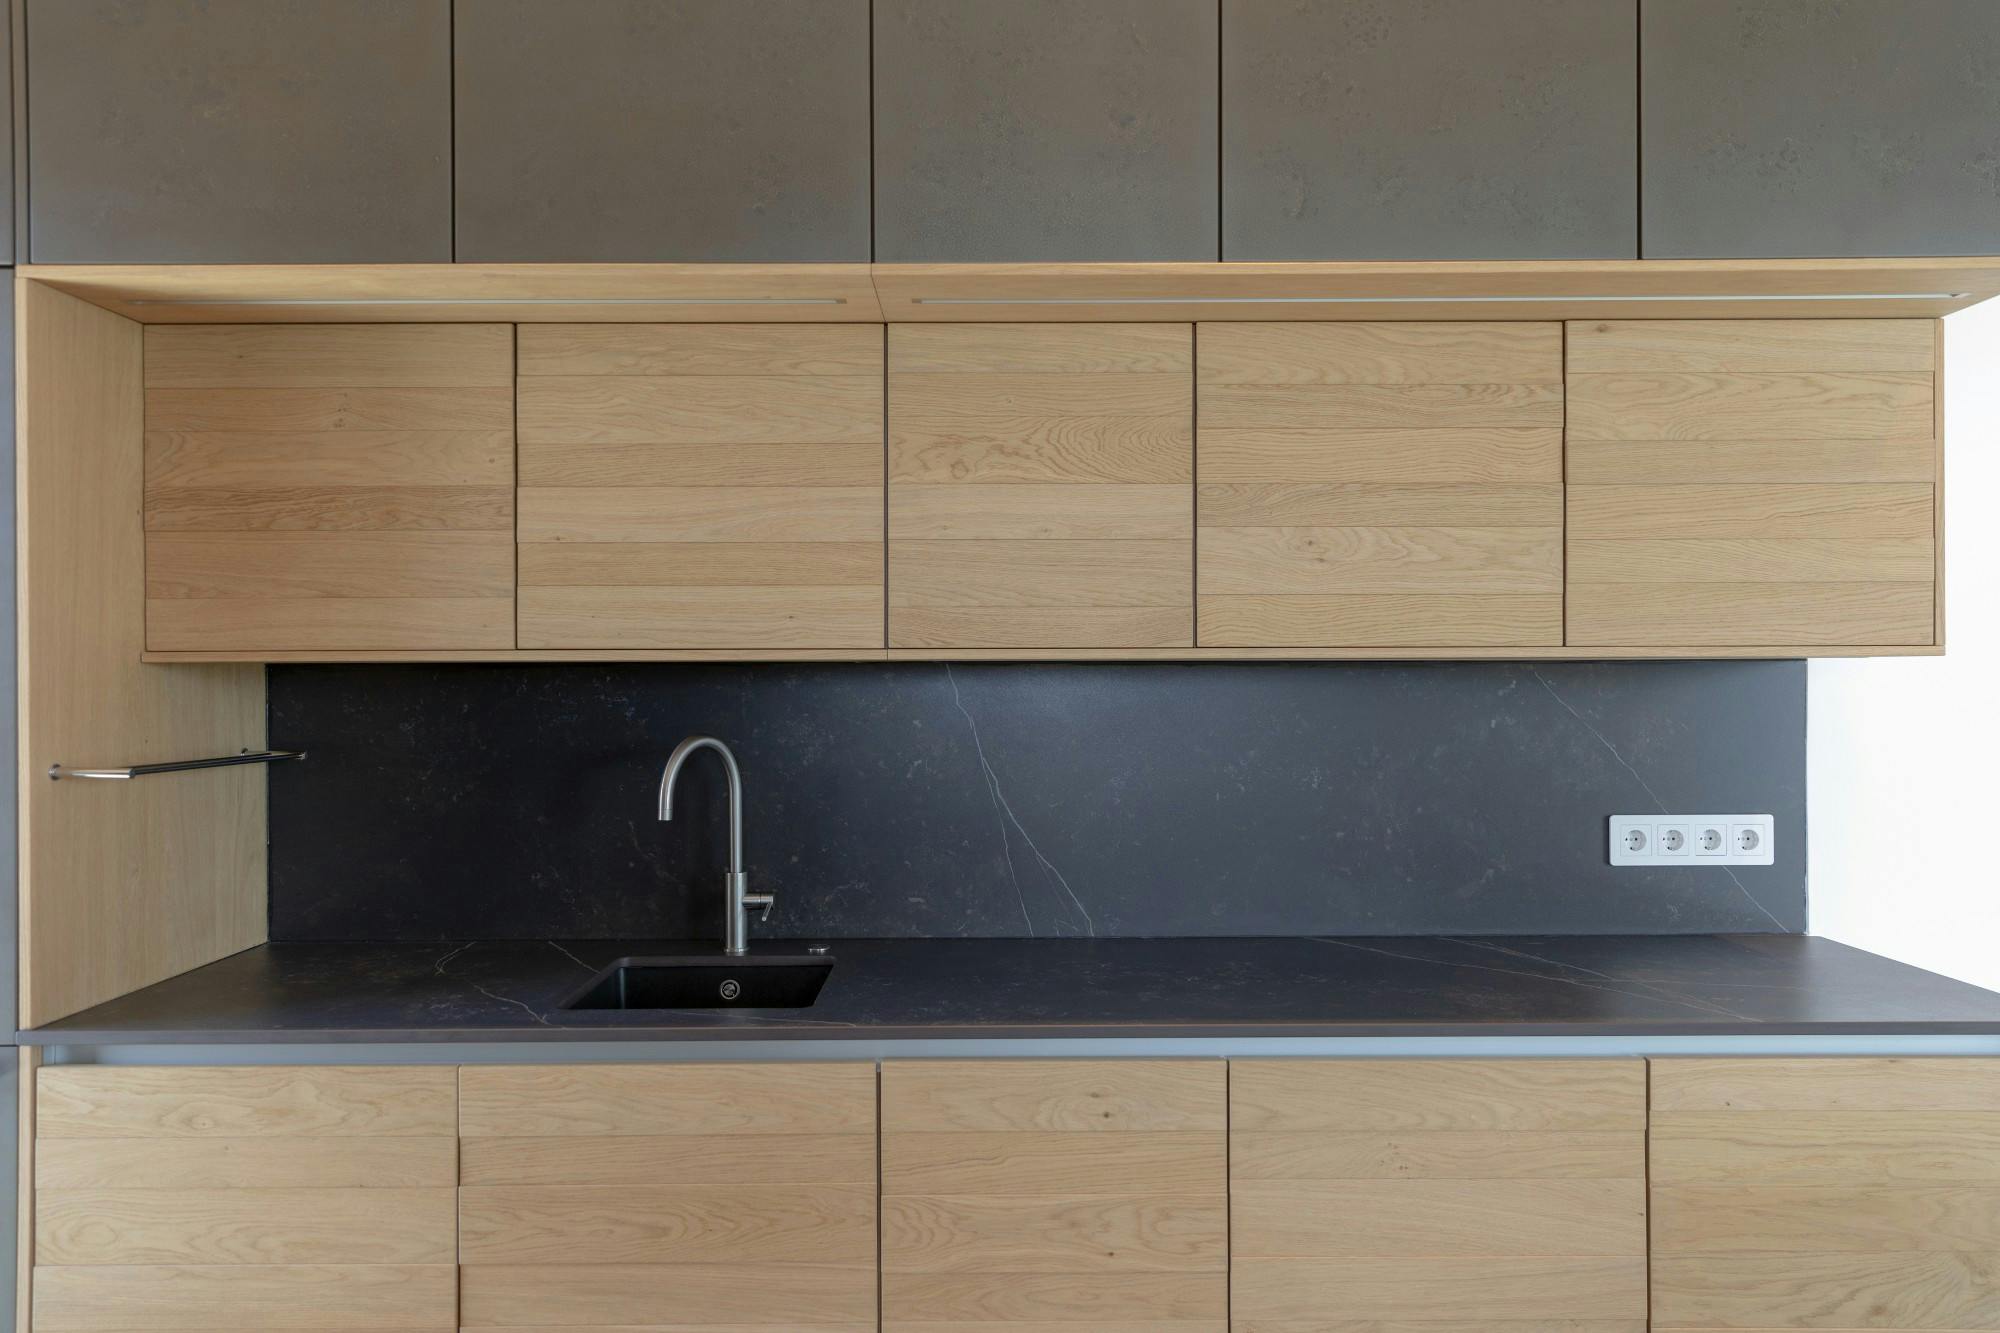 Numero immagine 48 della sezione corrente di Interior designer Sanna Piitulainen chose DKTN Rem for her new kitchen di Cosentino Italia